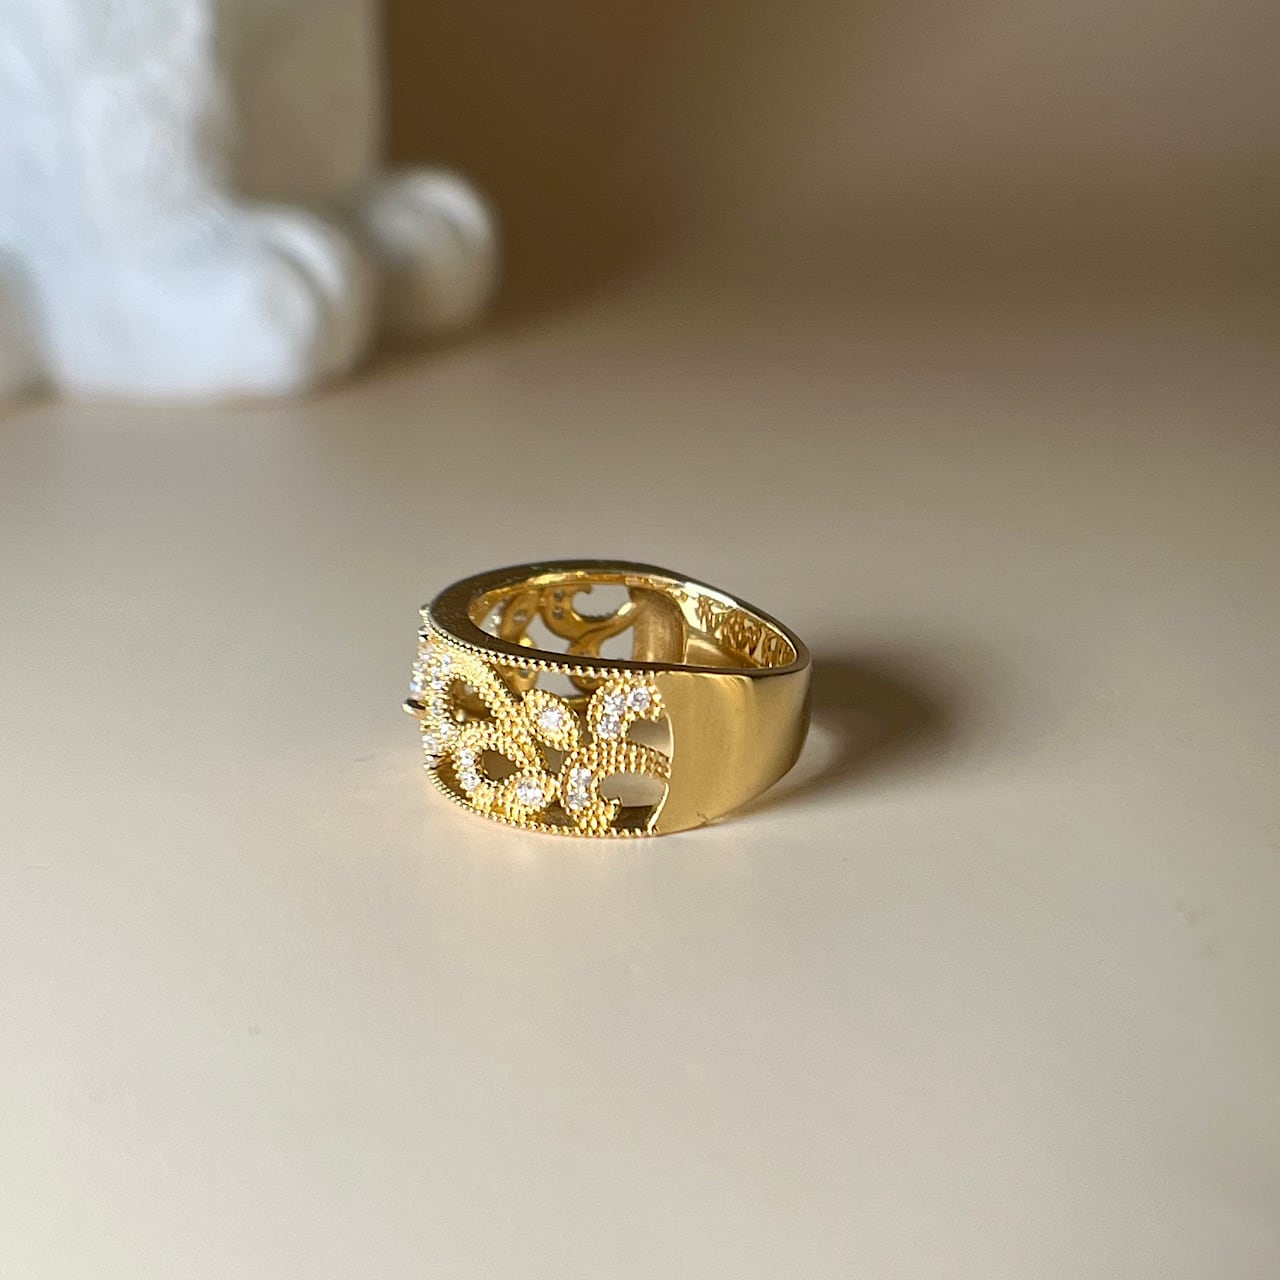 K18YG 指輪 リング サイズ約14号 イエローゴールド 約7.8g ダイヤモンド 0.61ct マーキスカット 小物 アクセサリー ジュエリー レディース 女性 jewelry Accessories ring gold diamond